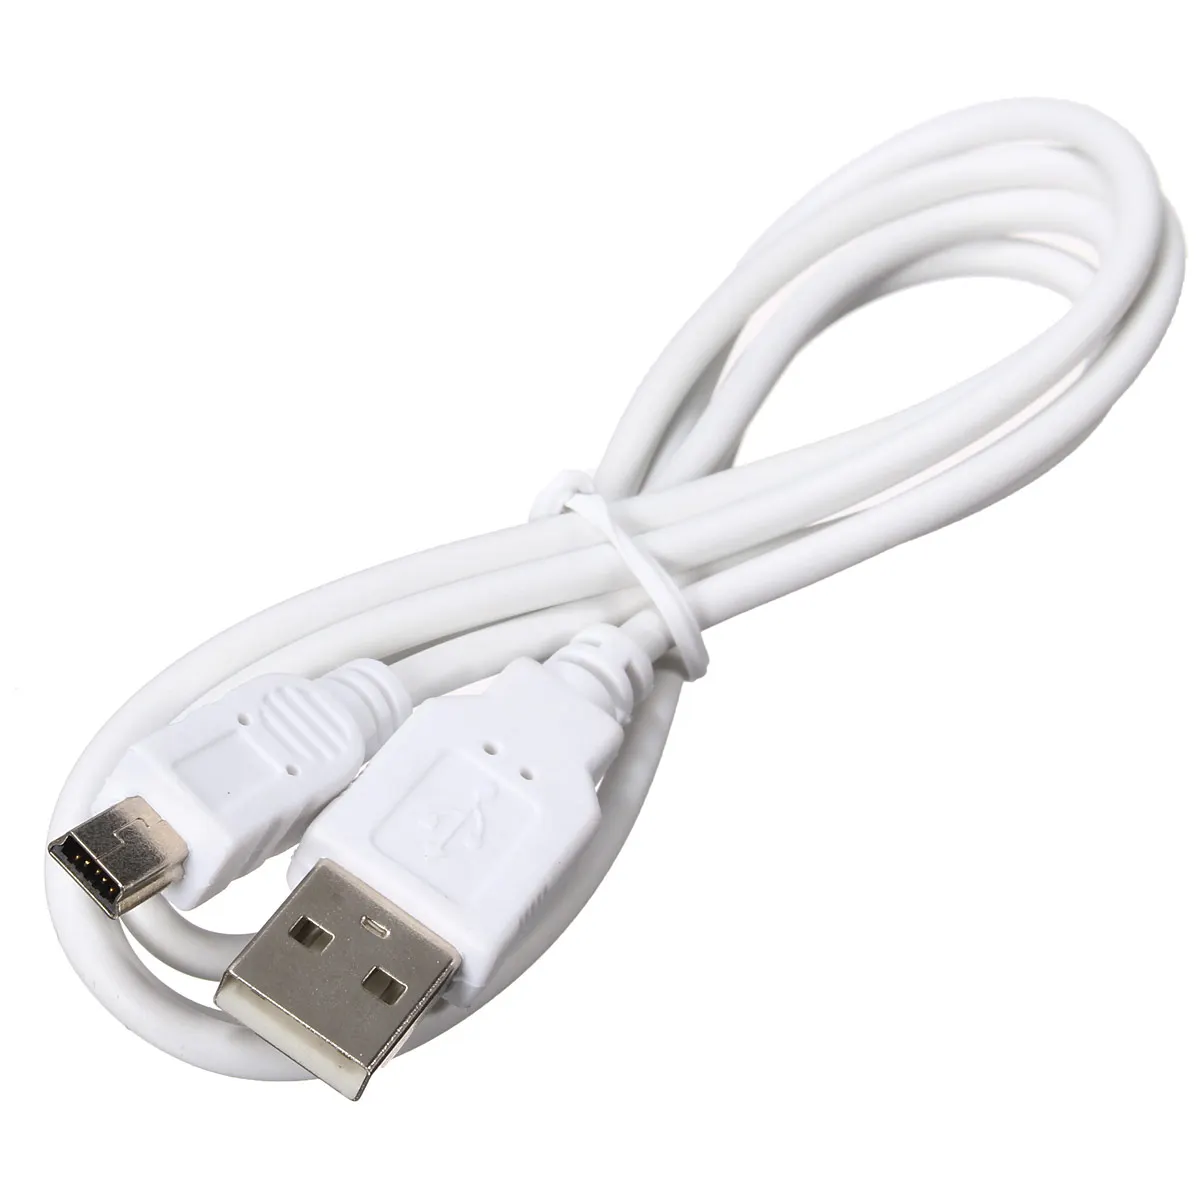 LEORY 25 см 90 градусов угловой мини USB кабель Mini USB к USB 2,0 кабель для синхронизации данных и зарядки для мобильного телефона MP3 MP4 gps камера HDD